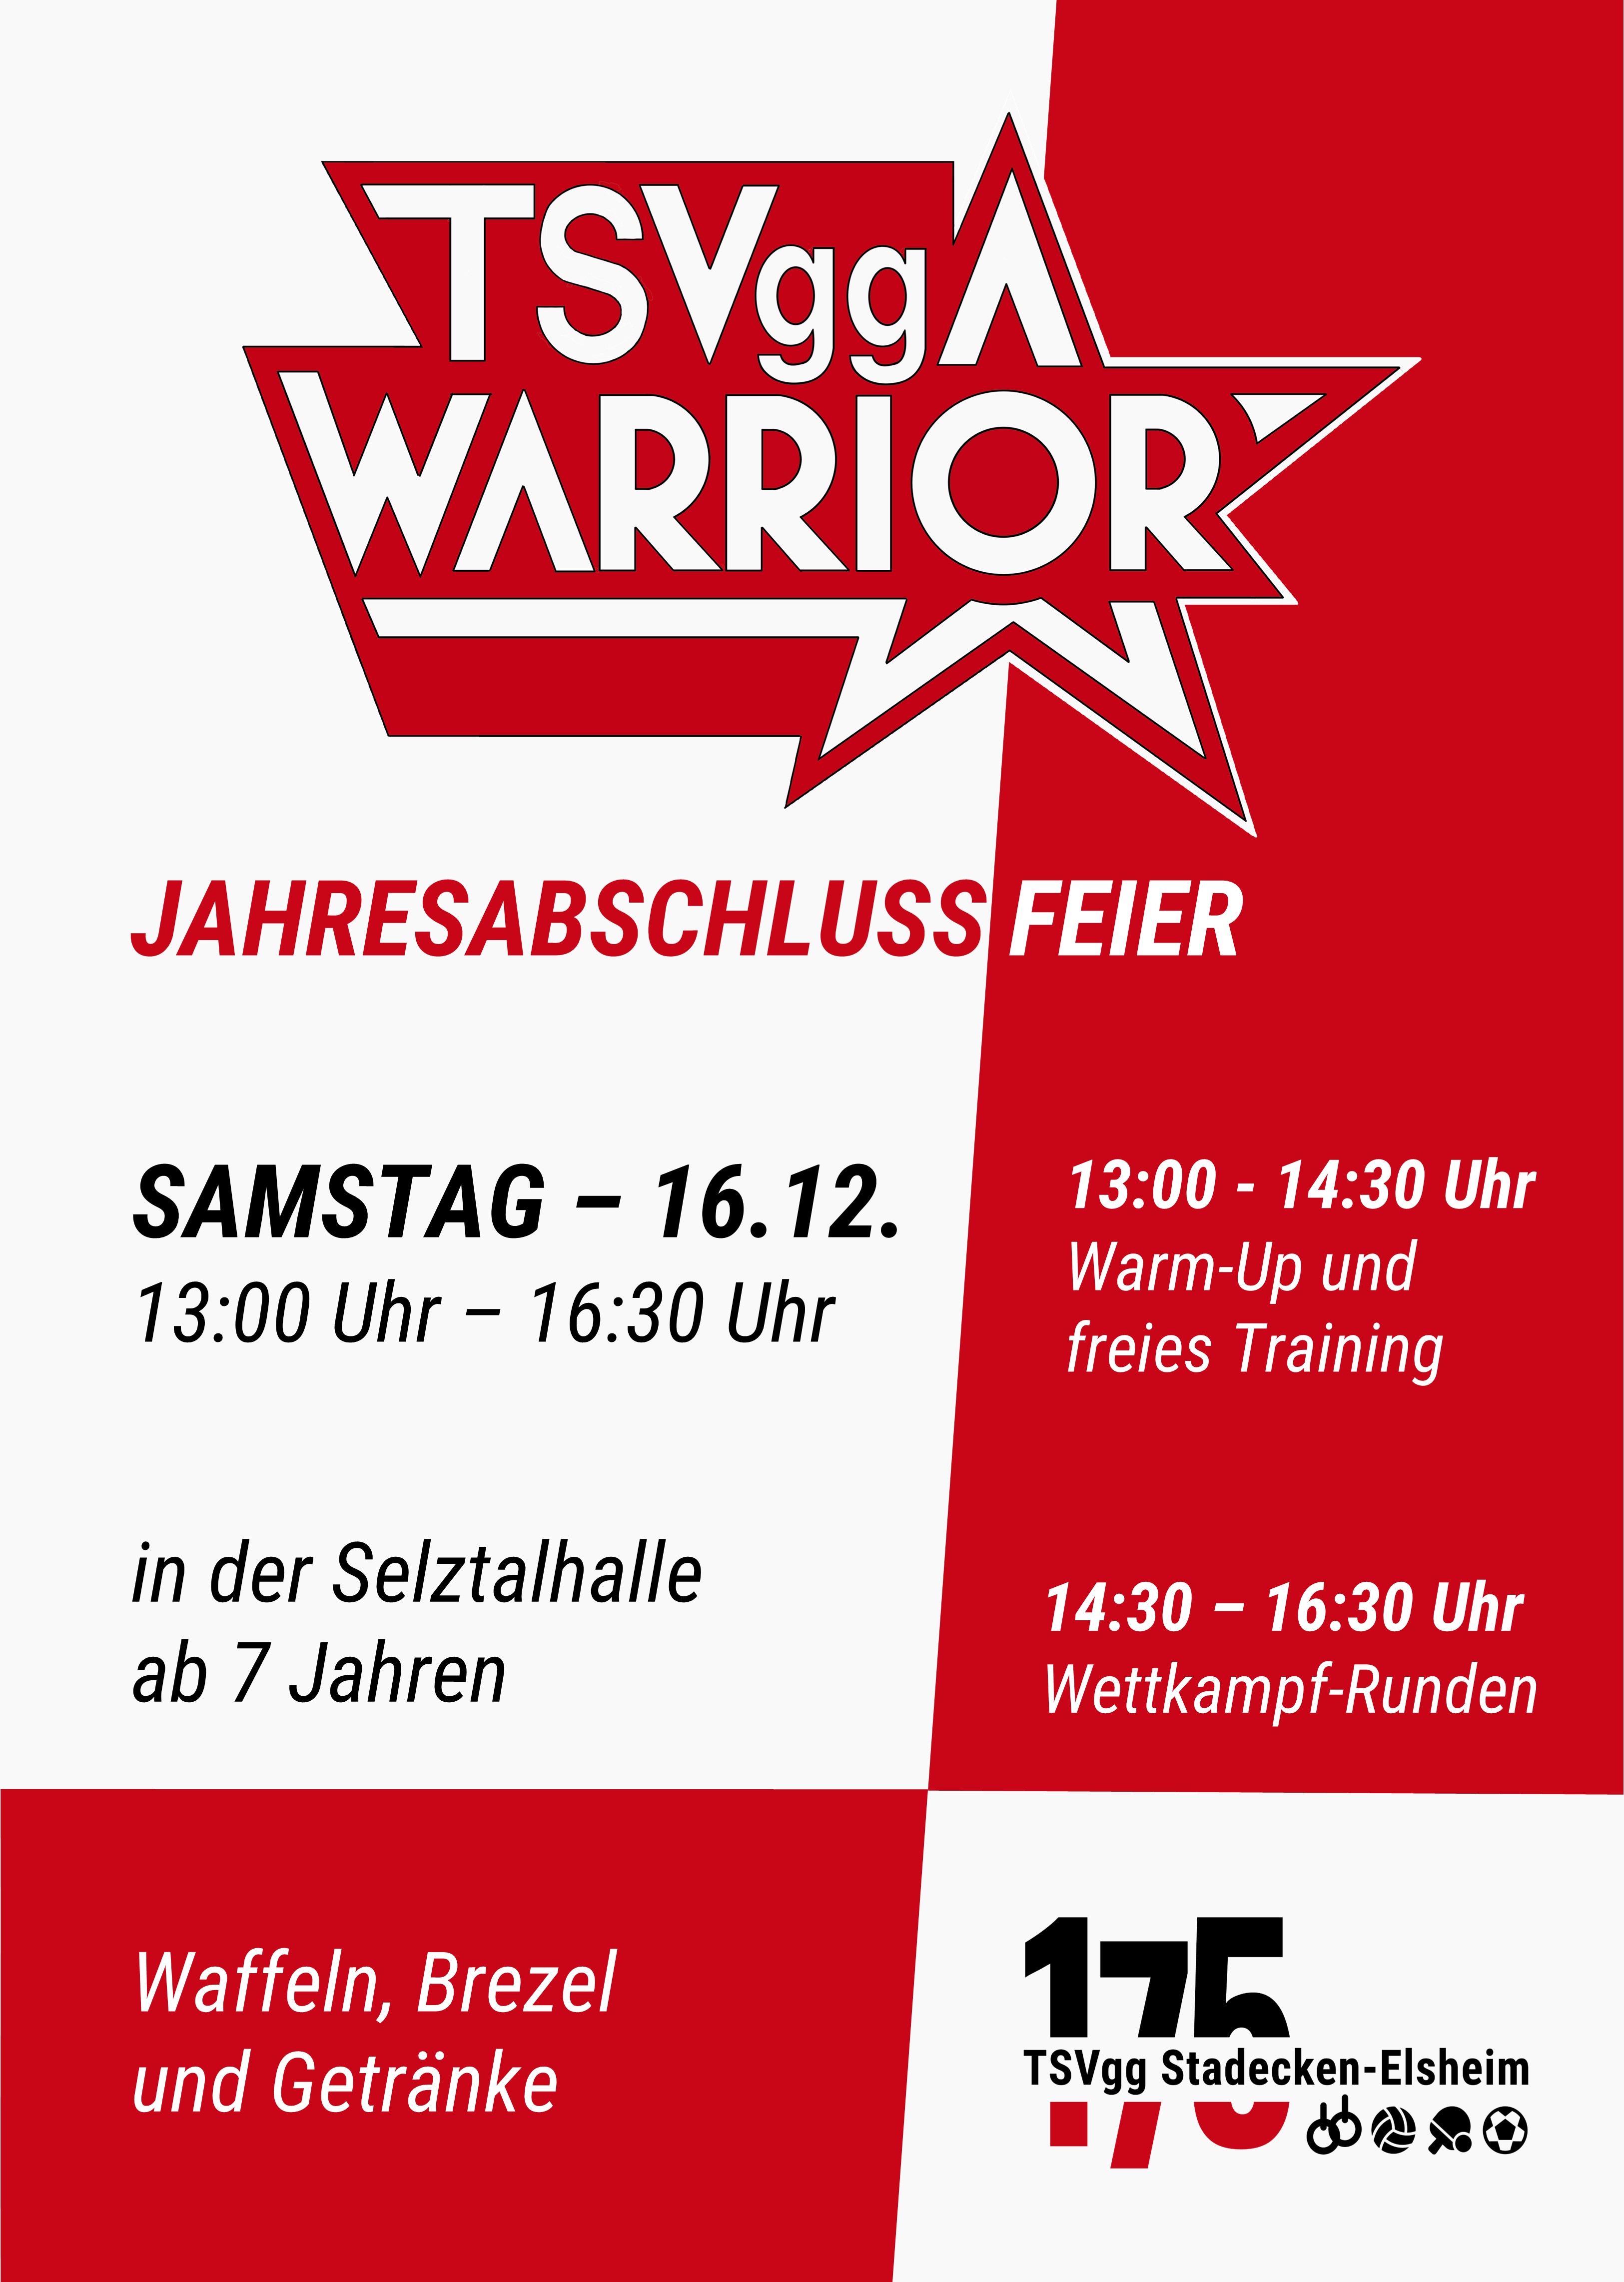 Plakat TSVgg Warrior